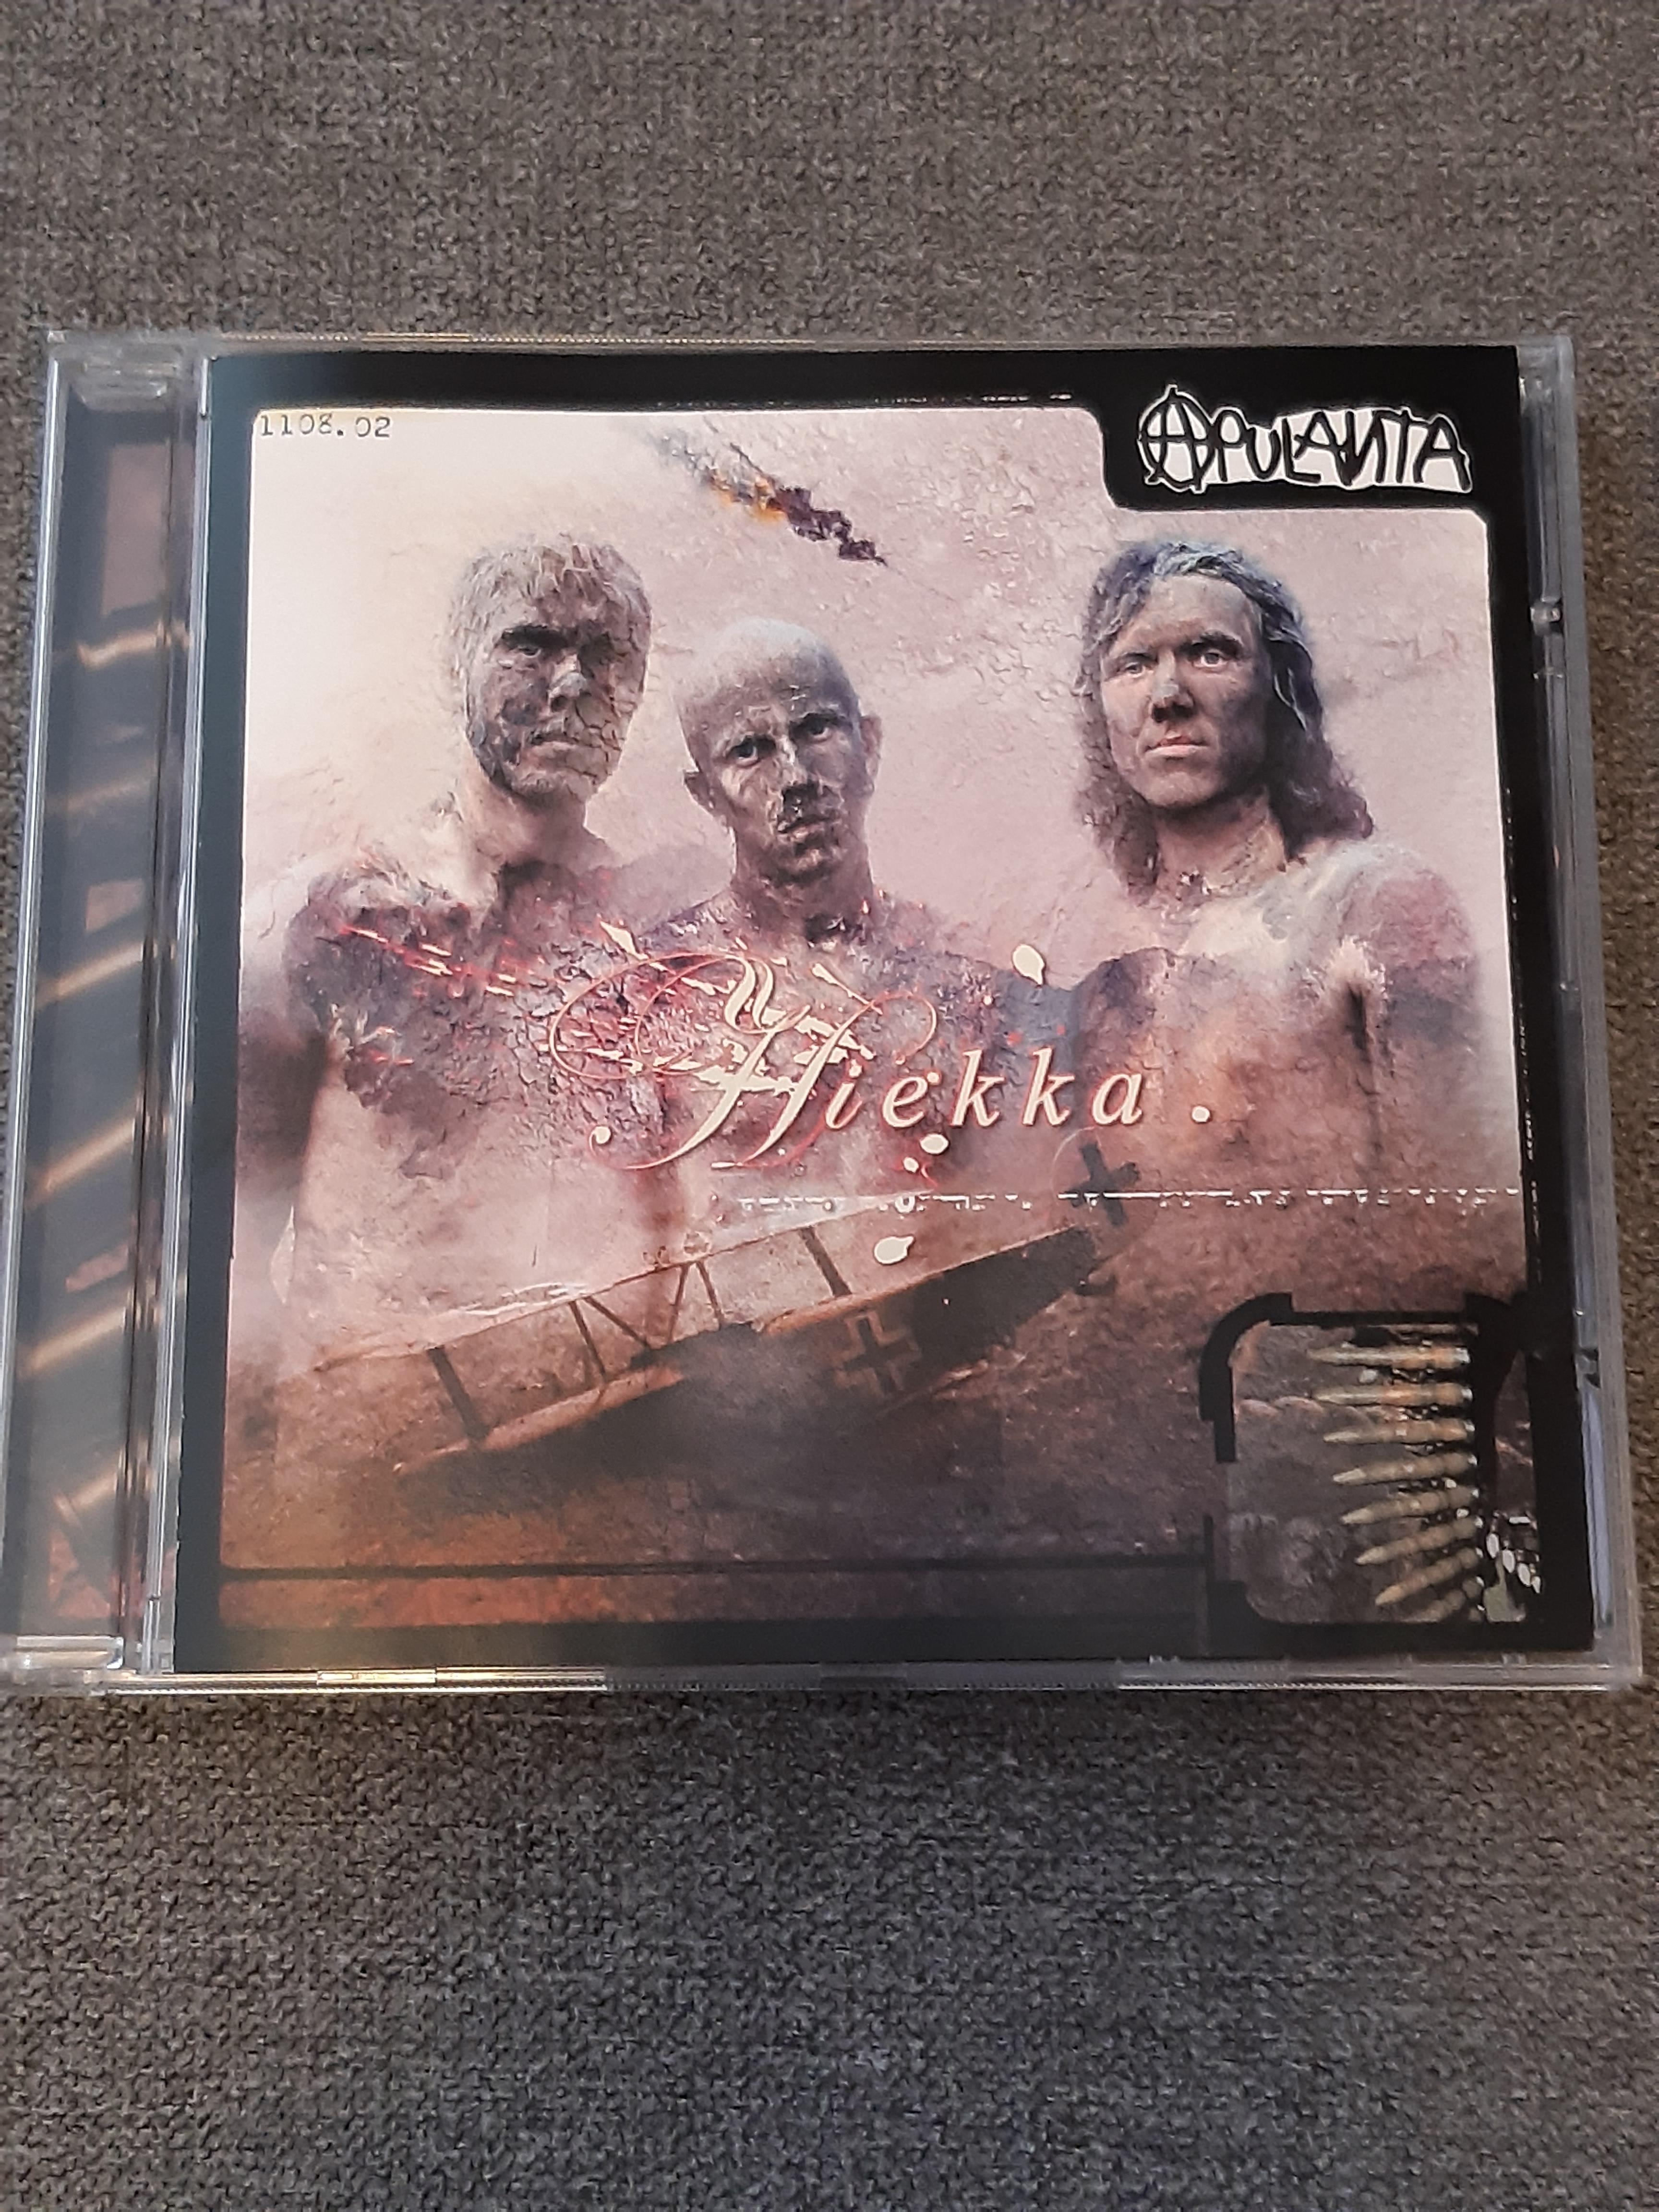 Apulanta - Hiekka - CD (käytetty)